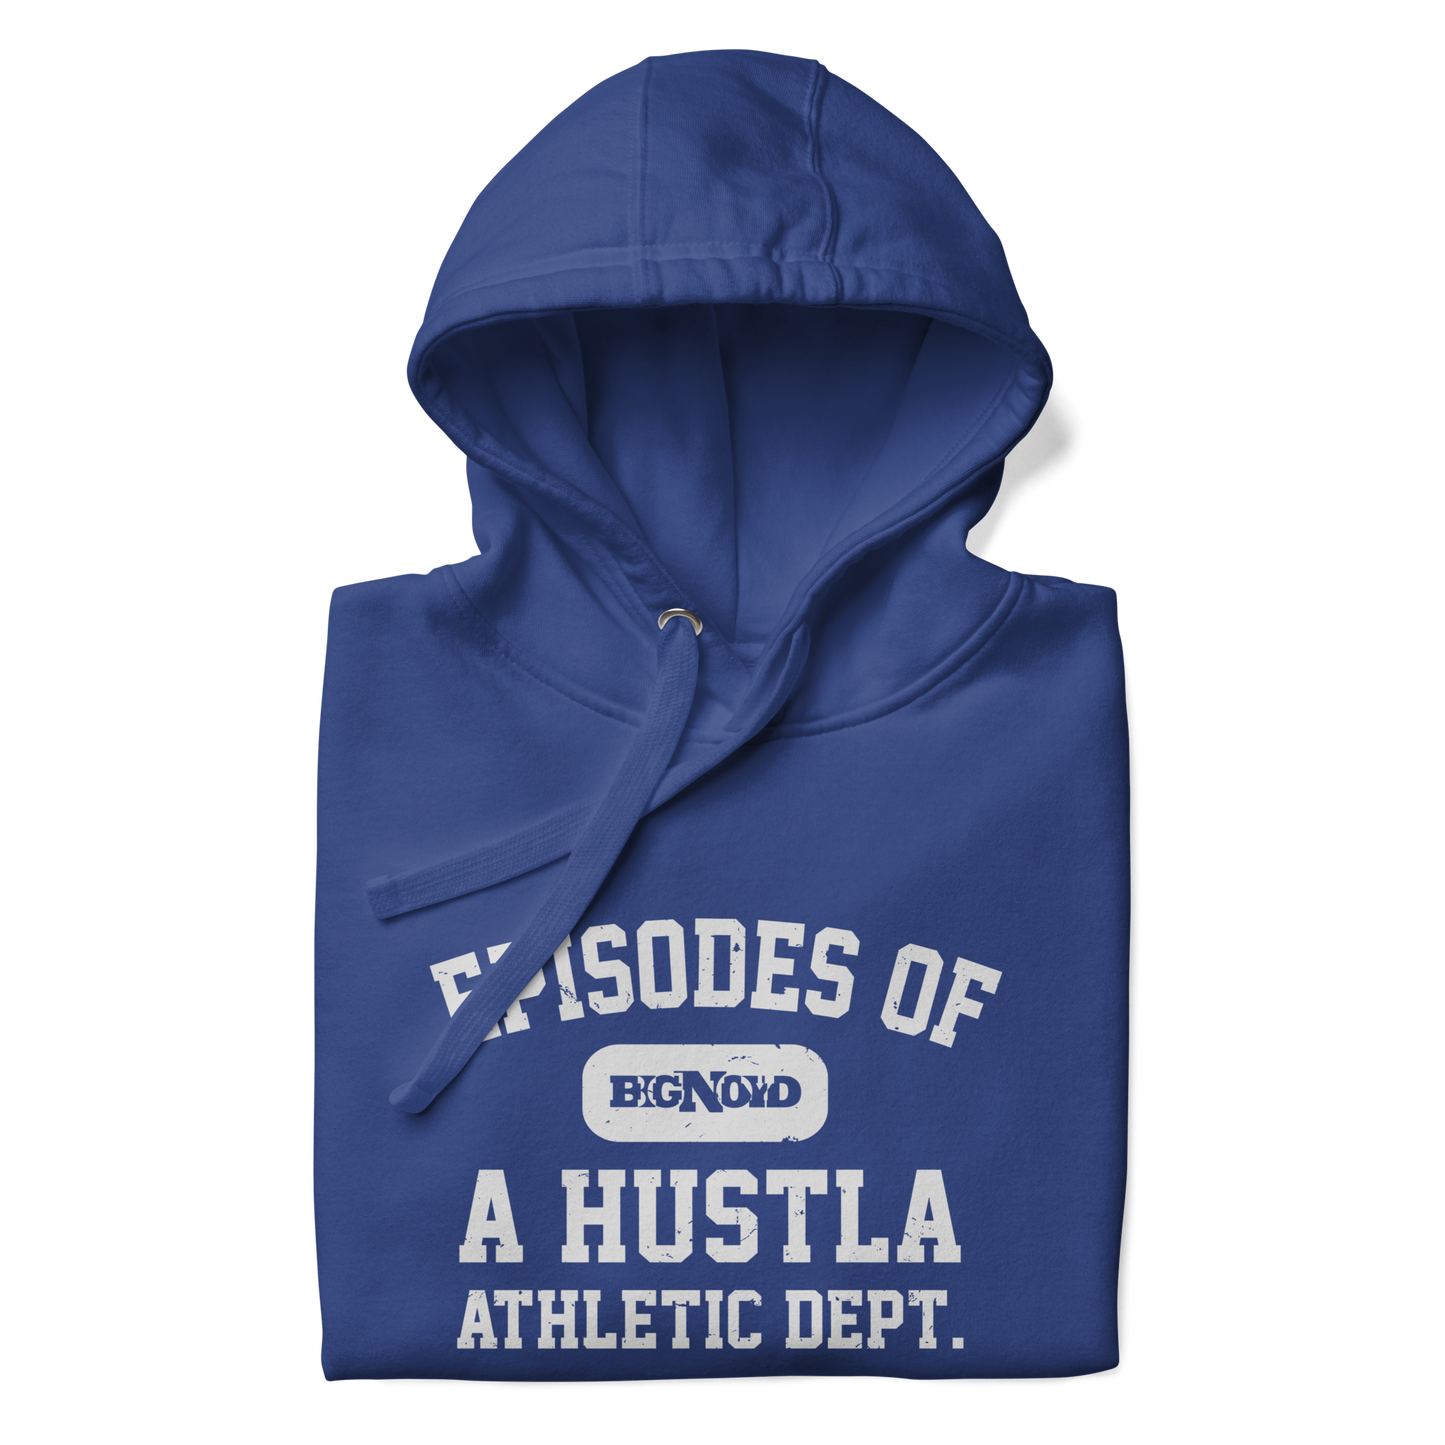 Episodes Of A Hustla (Athletic Dept. Hoodie)